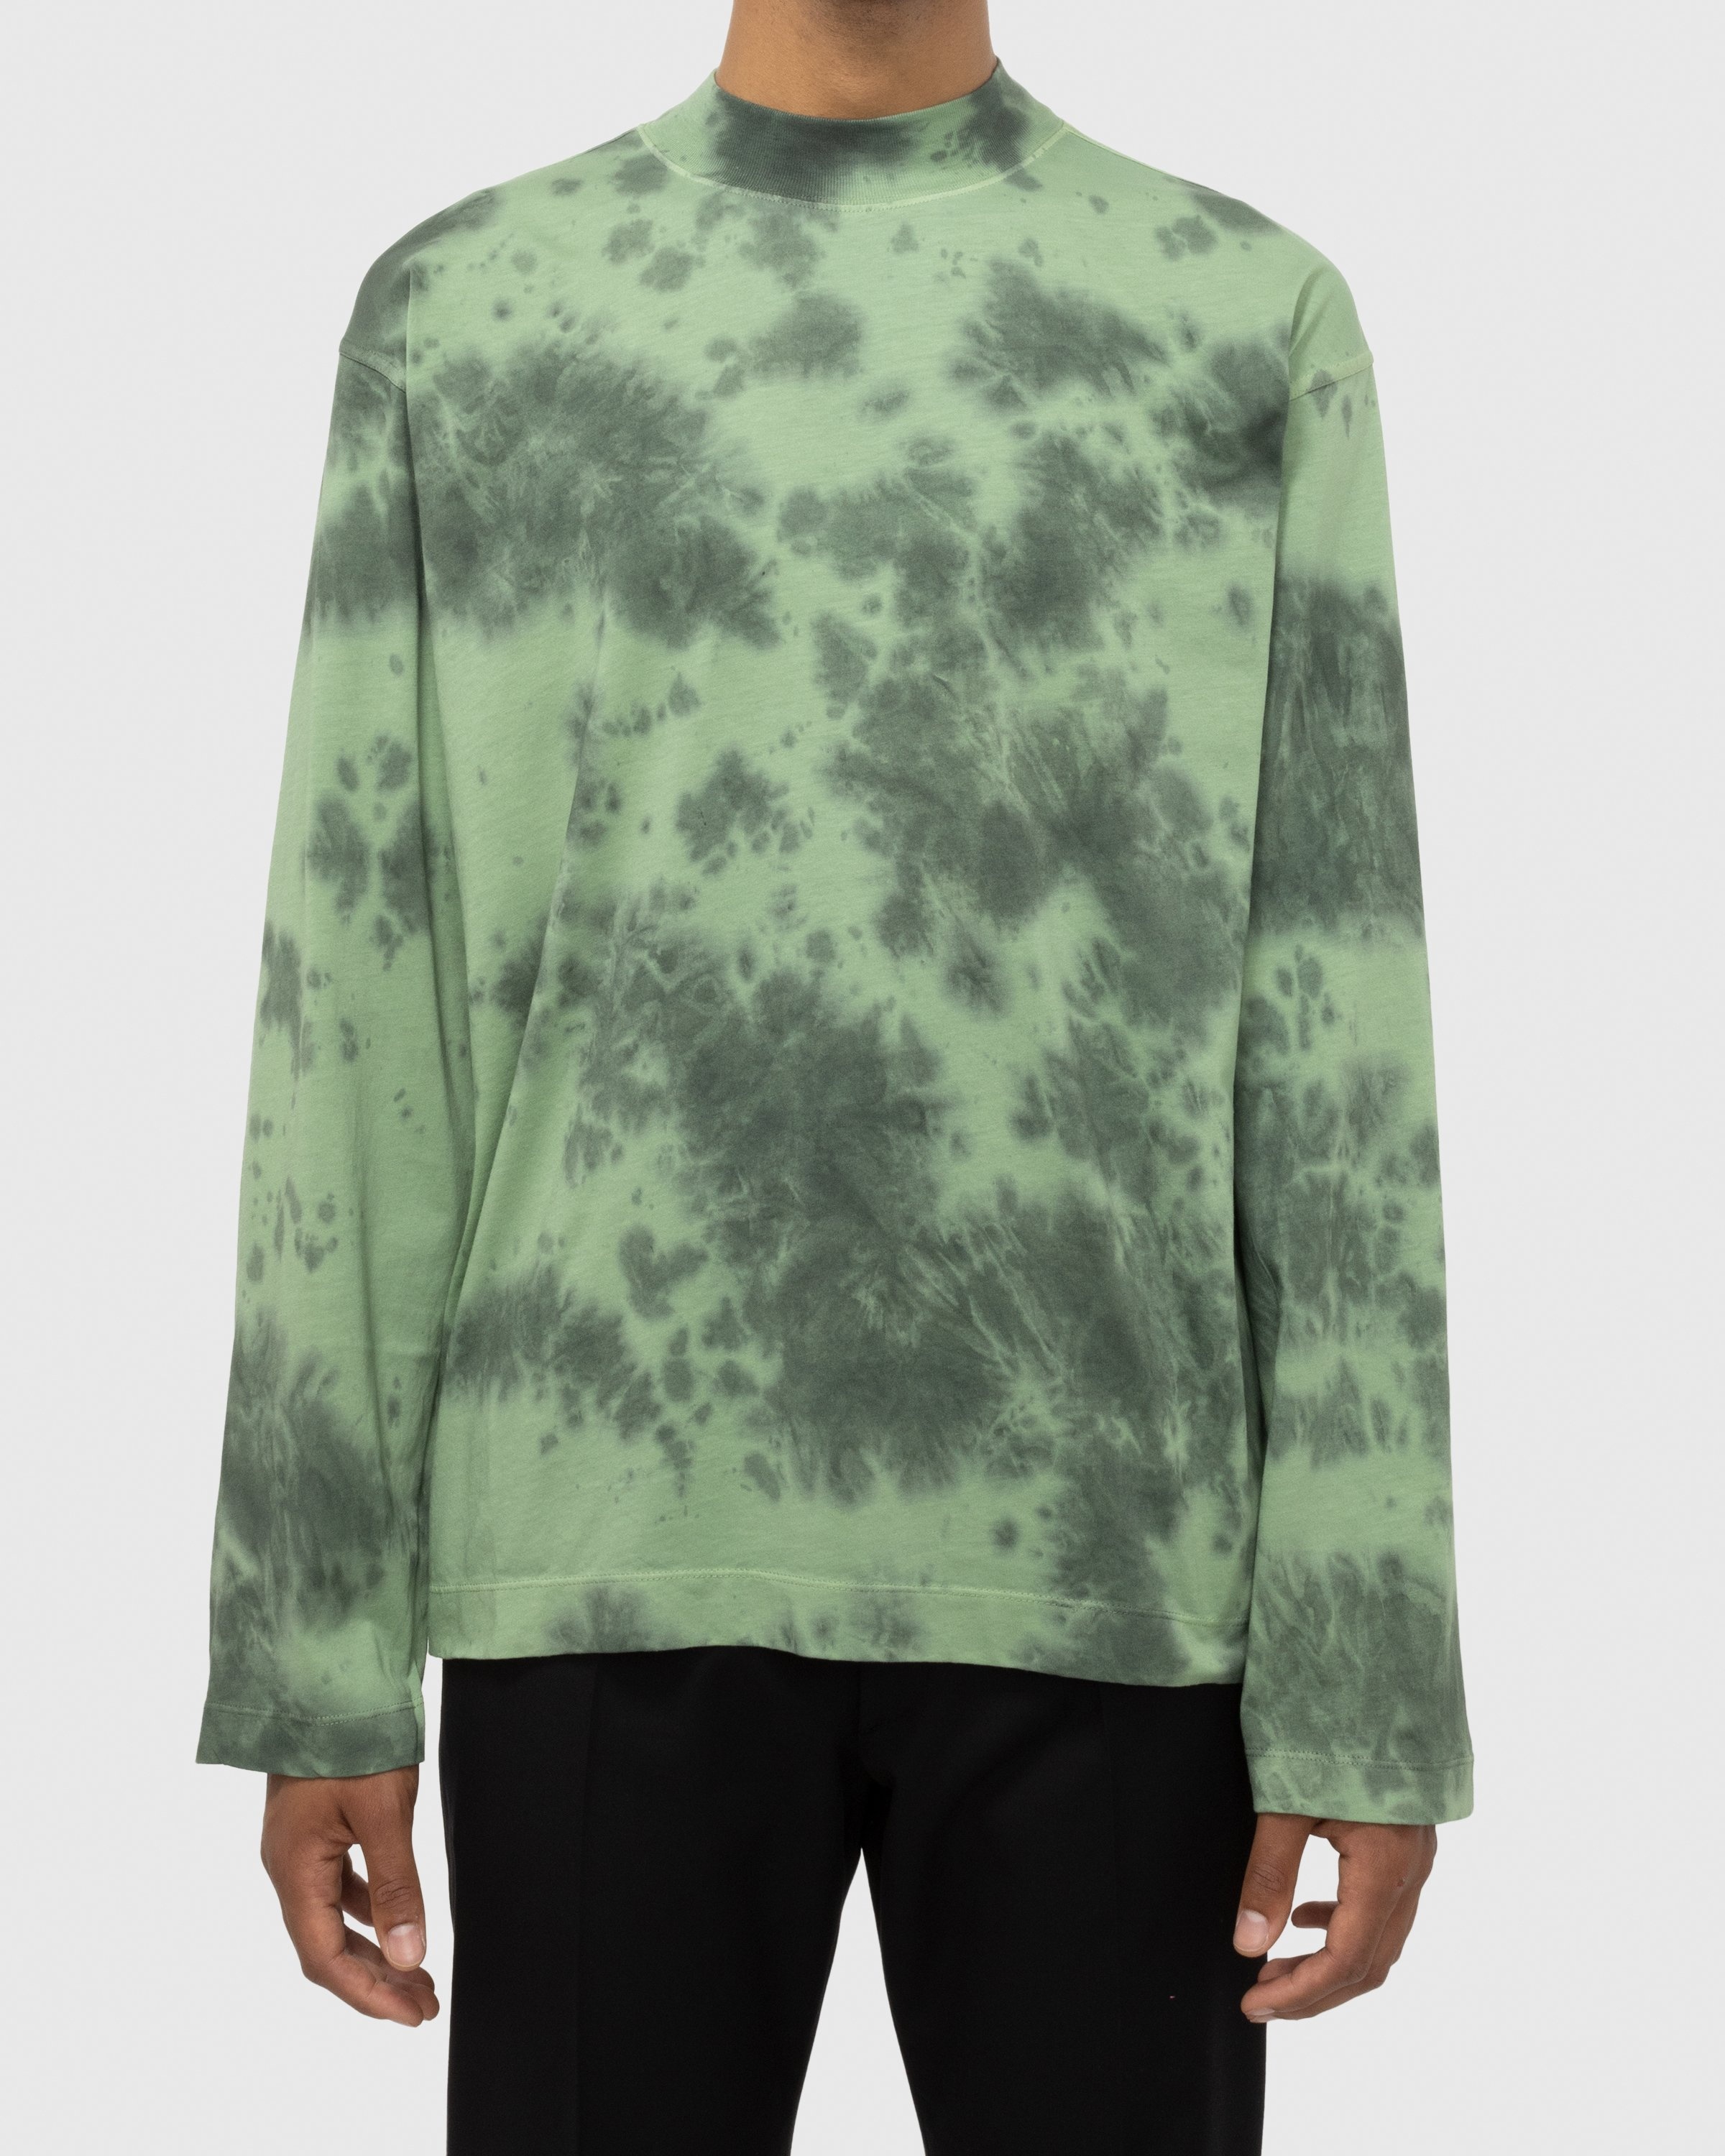 Dries van Noten – Heger T-Shirt Green - Longsleeve Shirts - Green - Image 2